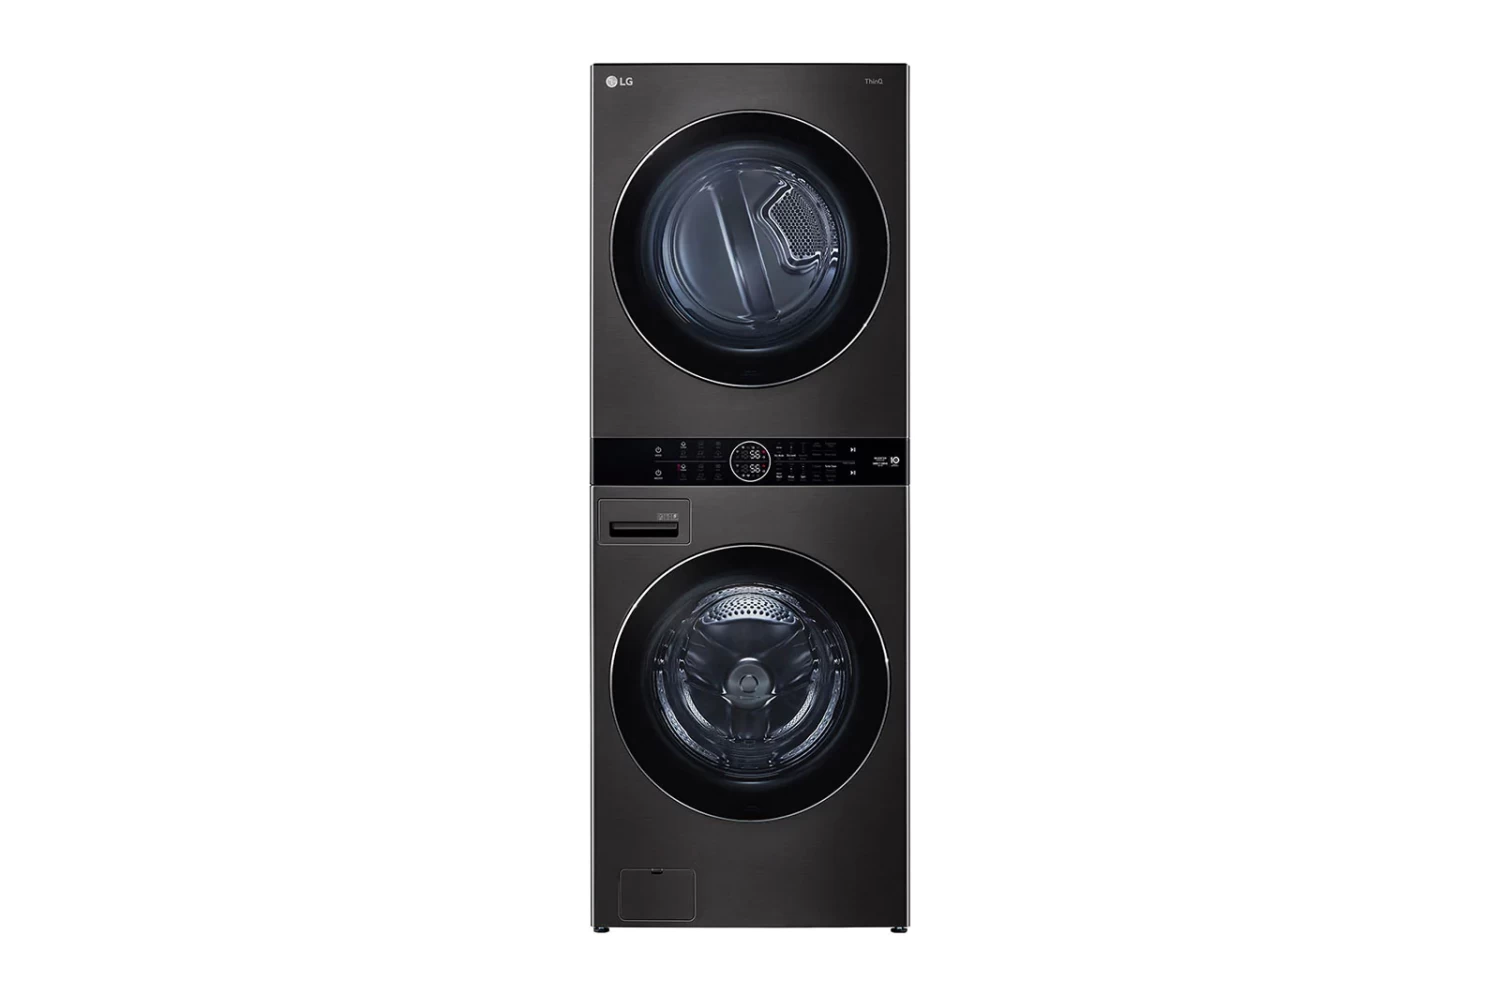 LG - Washing Machine 21/16 Kg LG WashTower™ with Center Control